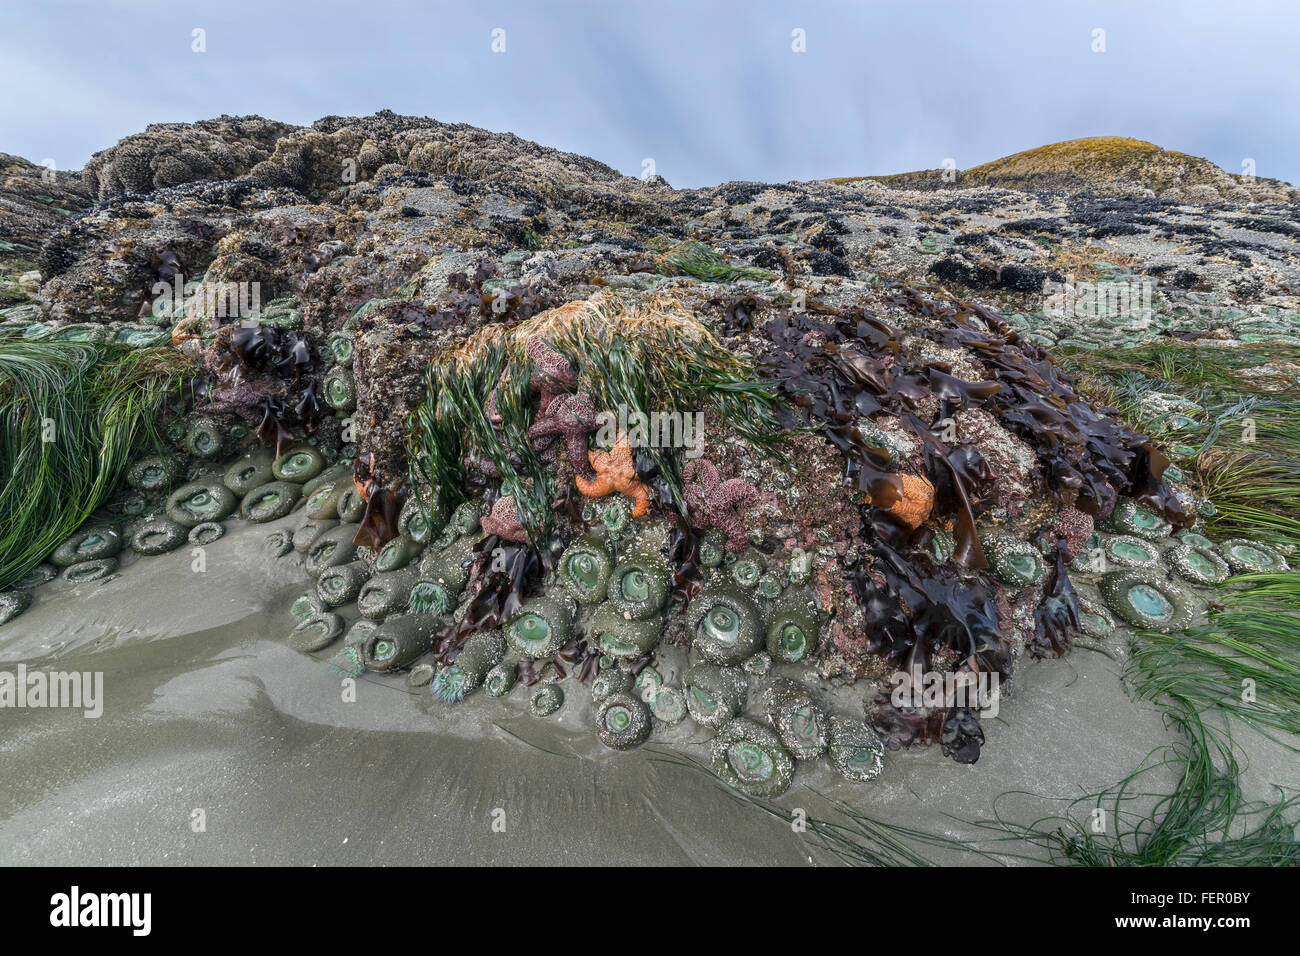 Intertidal zone biodiversity, Chesterman Beach, Tofino, British Columbia Stock Photo